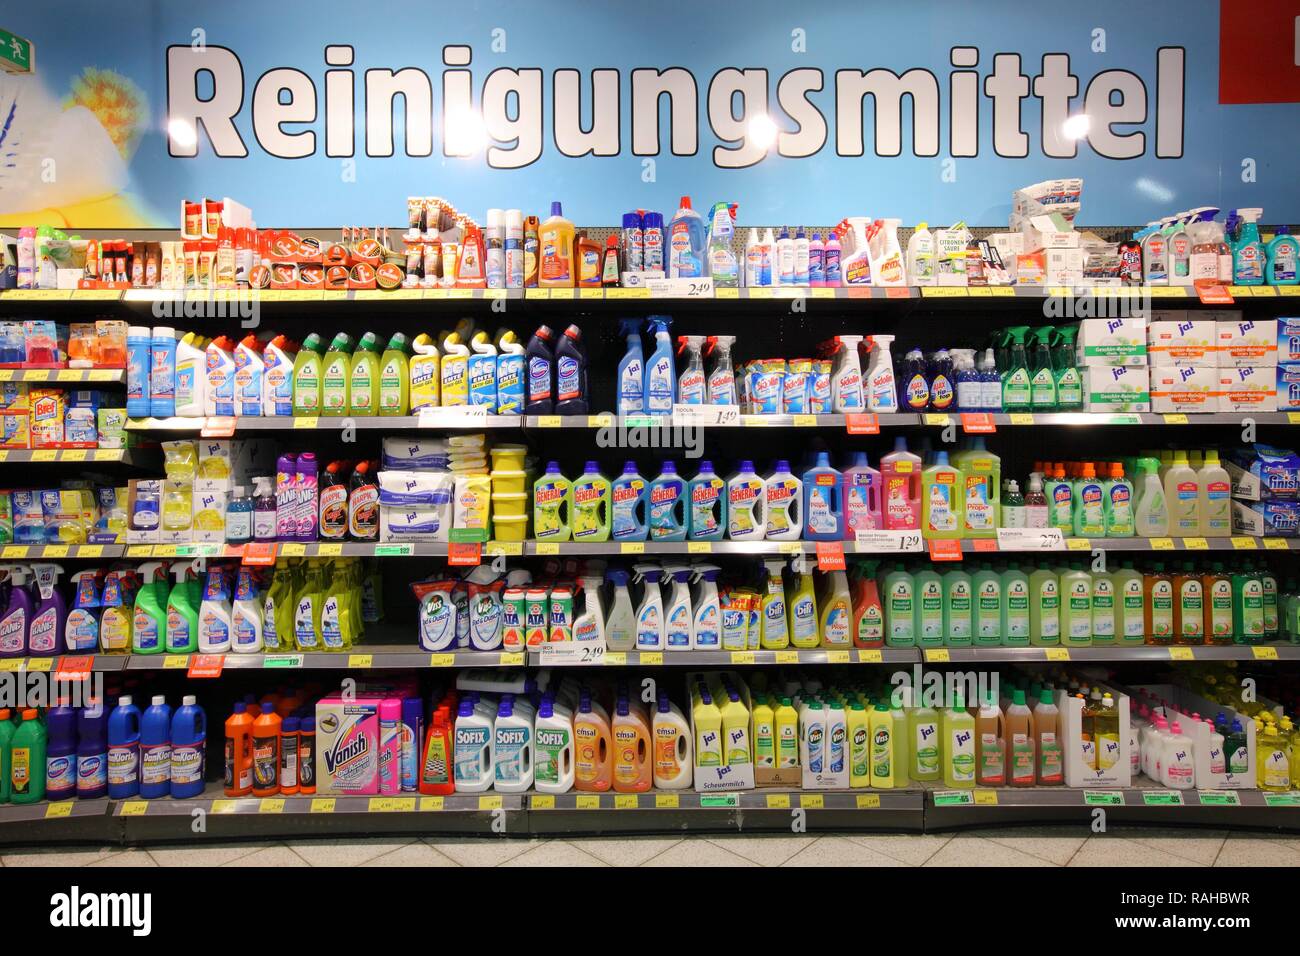 Reinigungsmittel, Regal, self-Service, Essen Abteilung, Supermarkt  Stockfotografie - Alamy